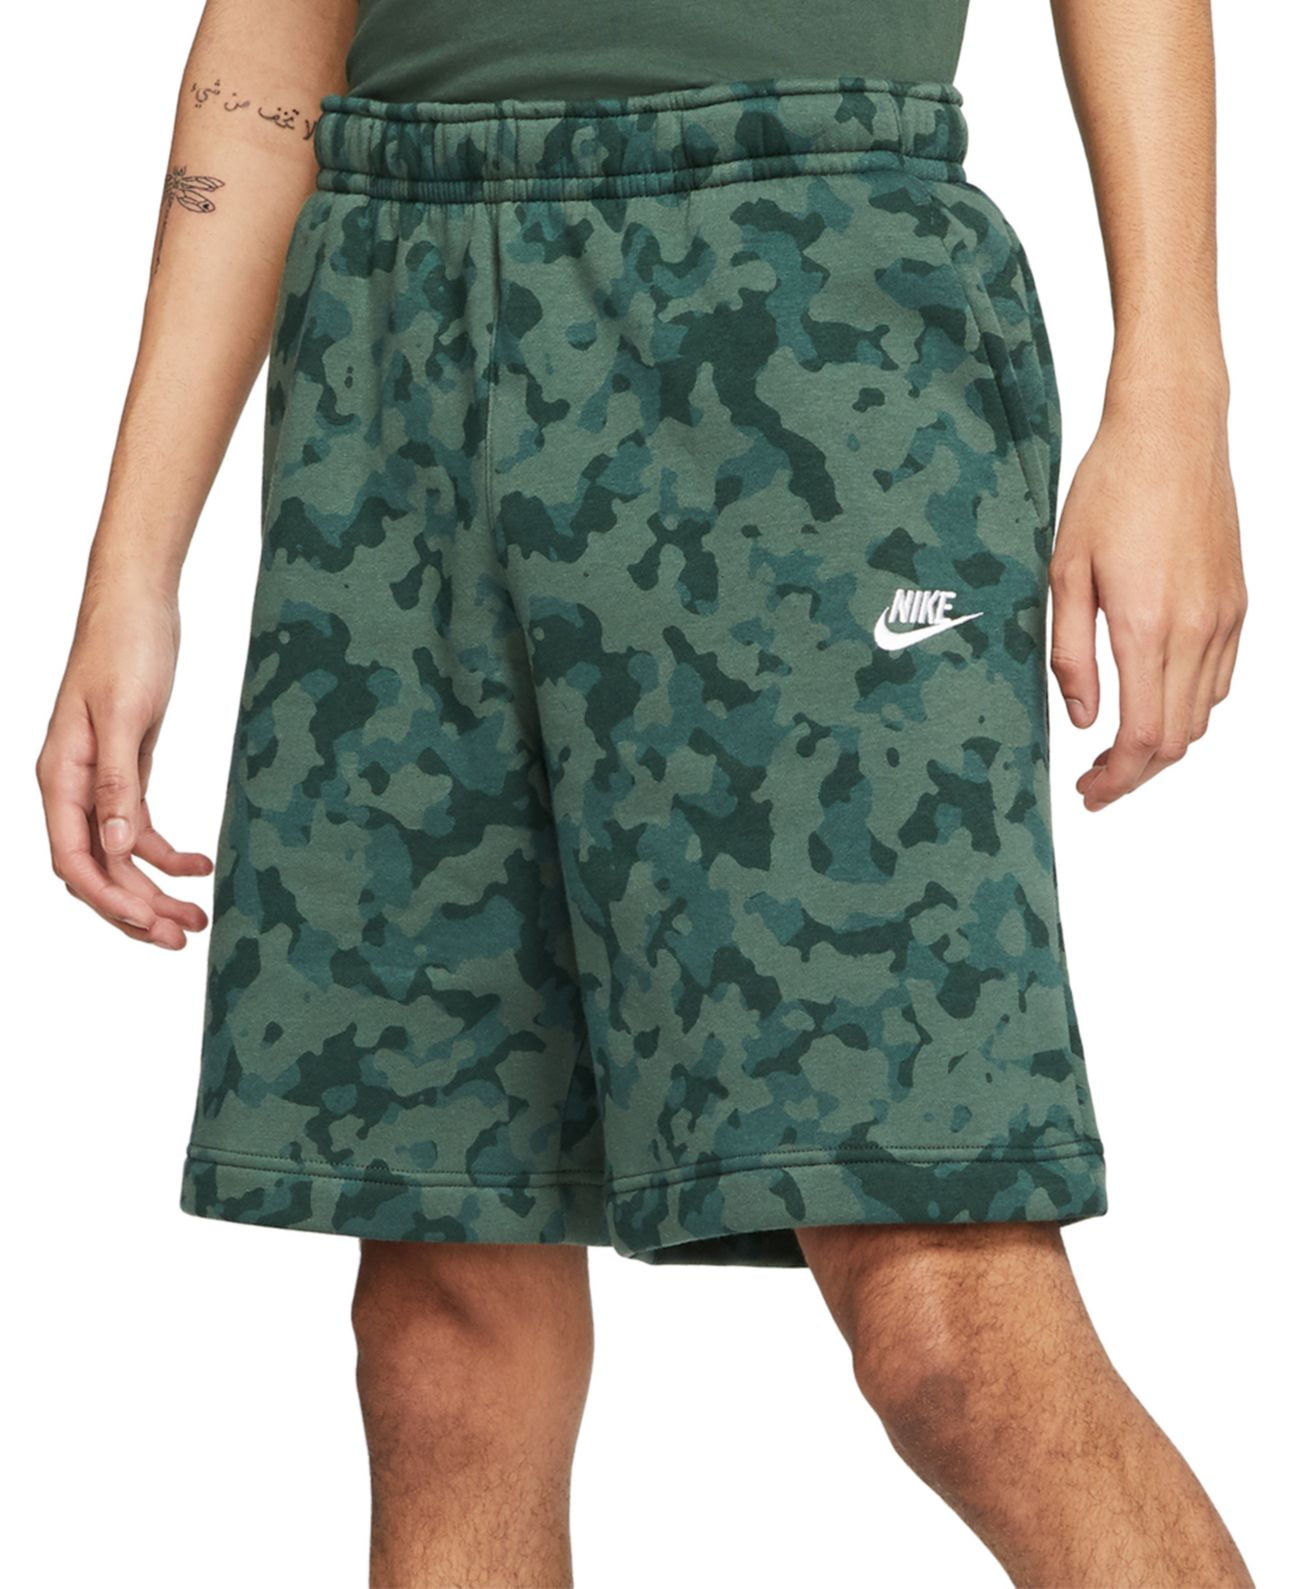 Microordenador Qué Durante ~ Nike Mens Camo Fleece Shorts - Walmart.com